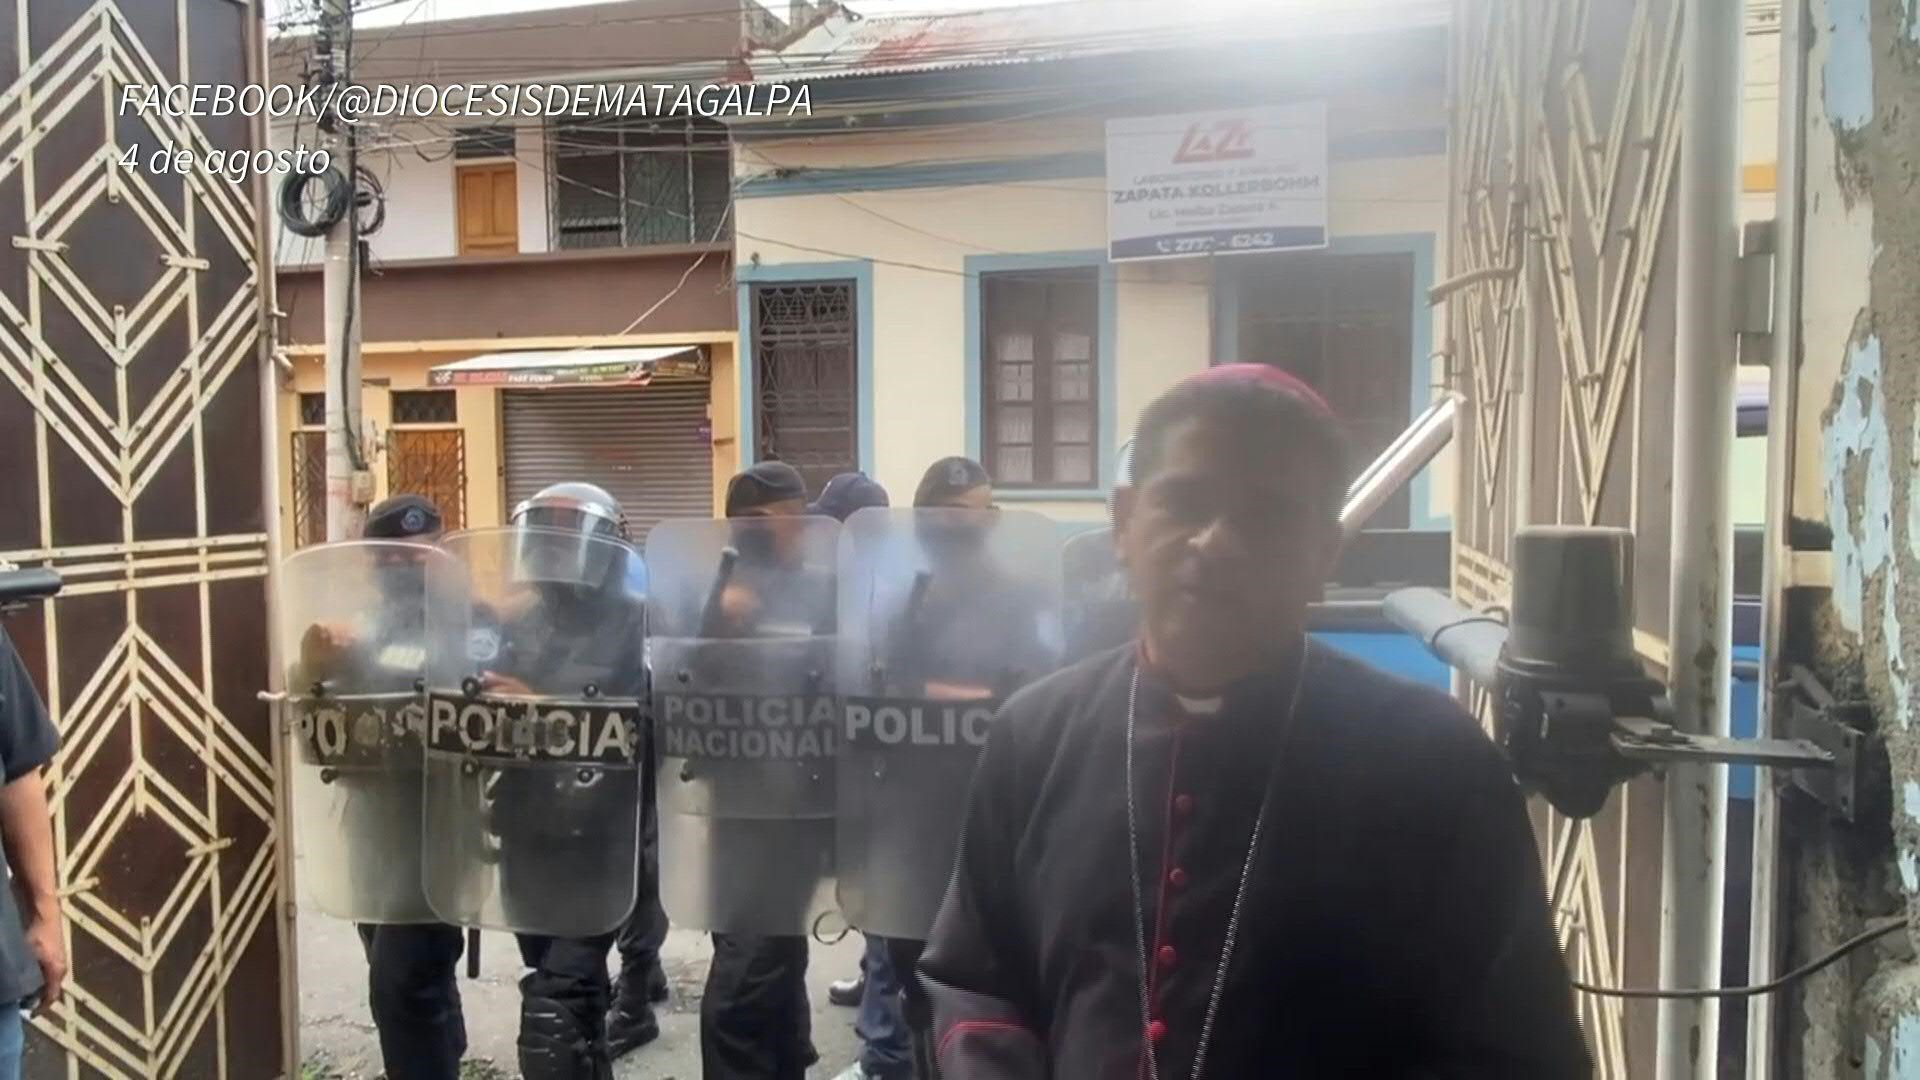 El obispo estuvo más de dos semanas en la curia rodeado de policías